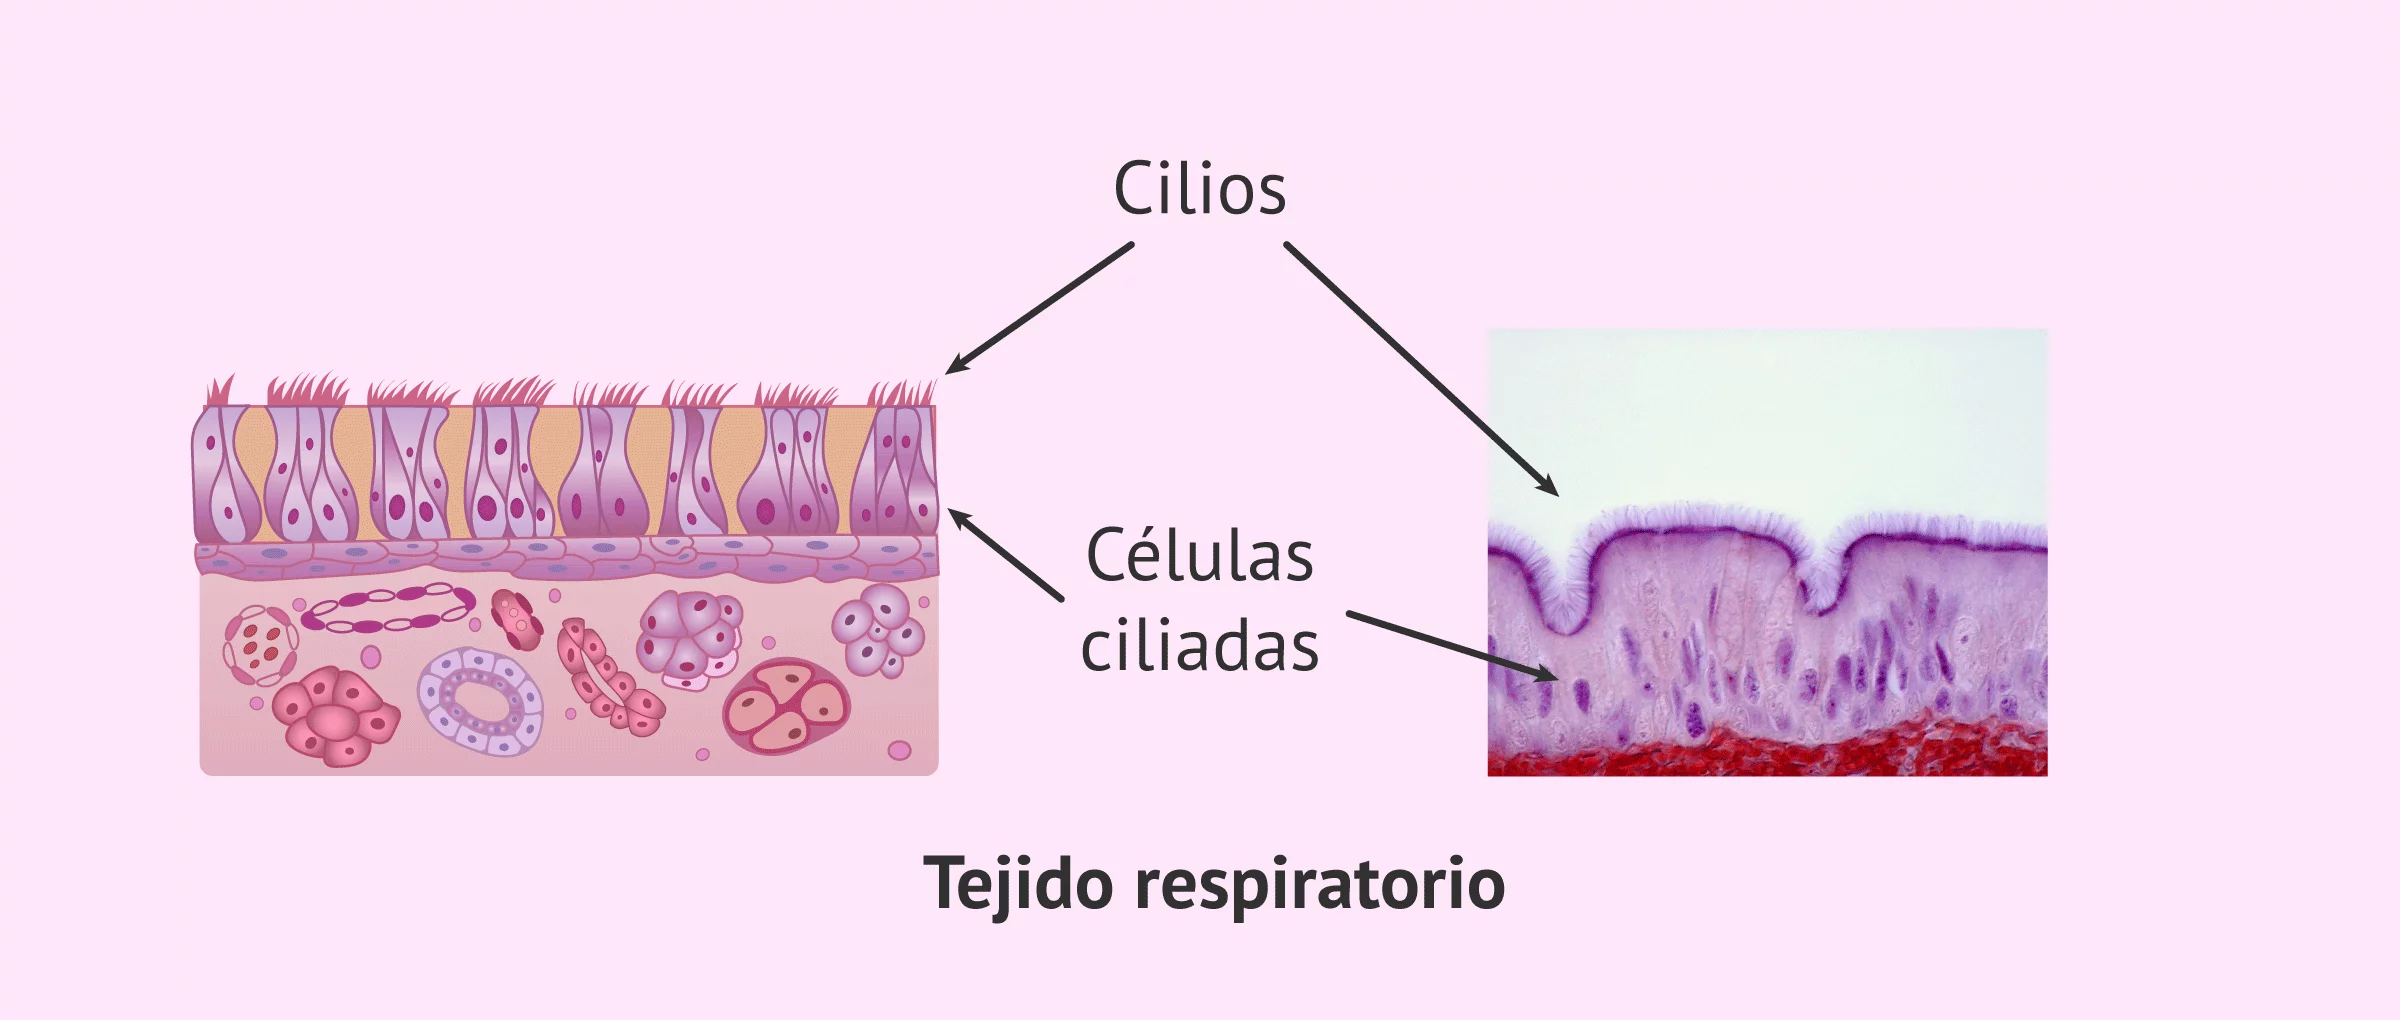 Epitelio respiratorio con cilios y Síndrome de Kartagener